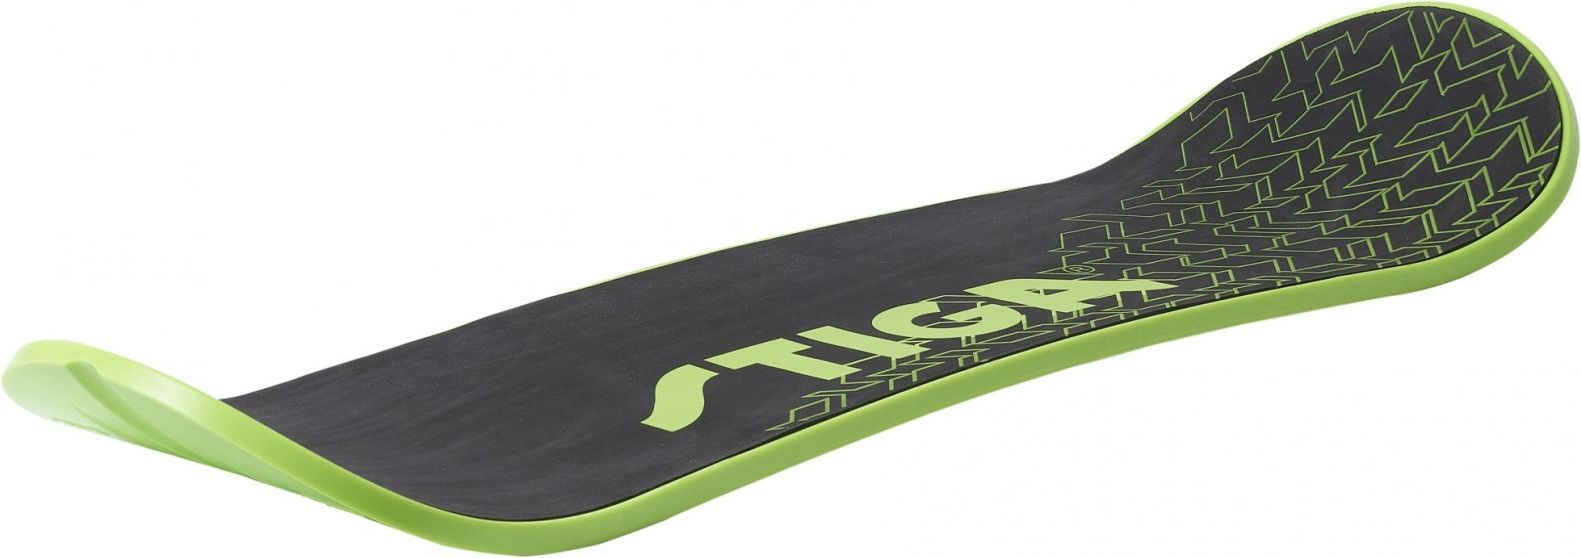 Sněžný skate STIGA Snow Skate - černo-zelený - obrázek 1